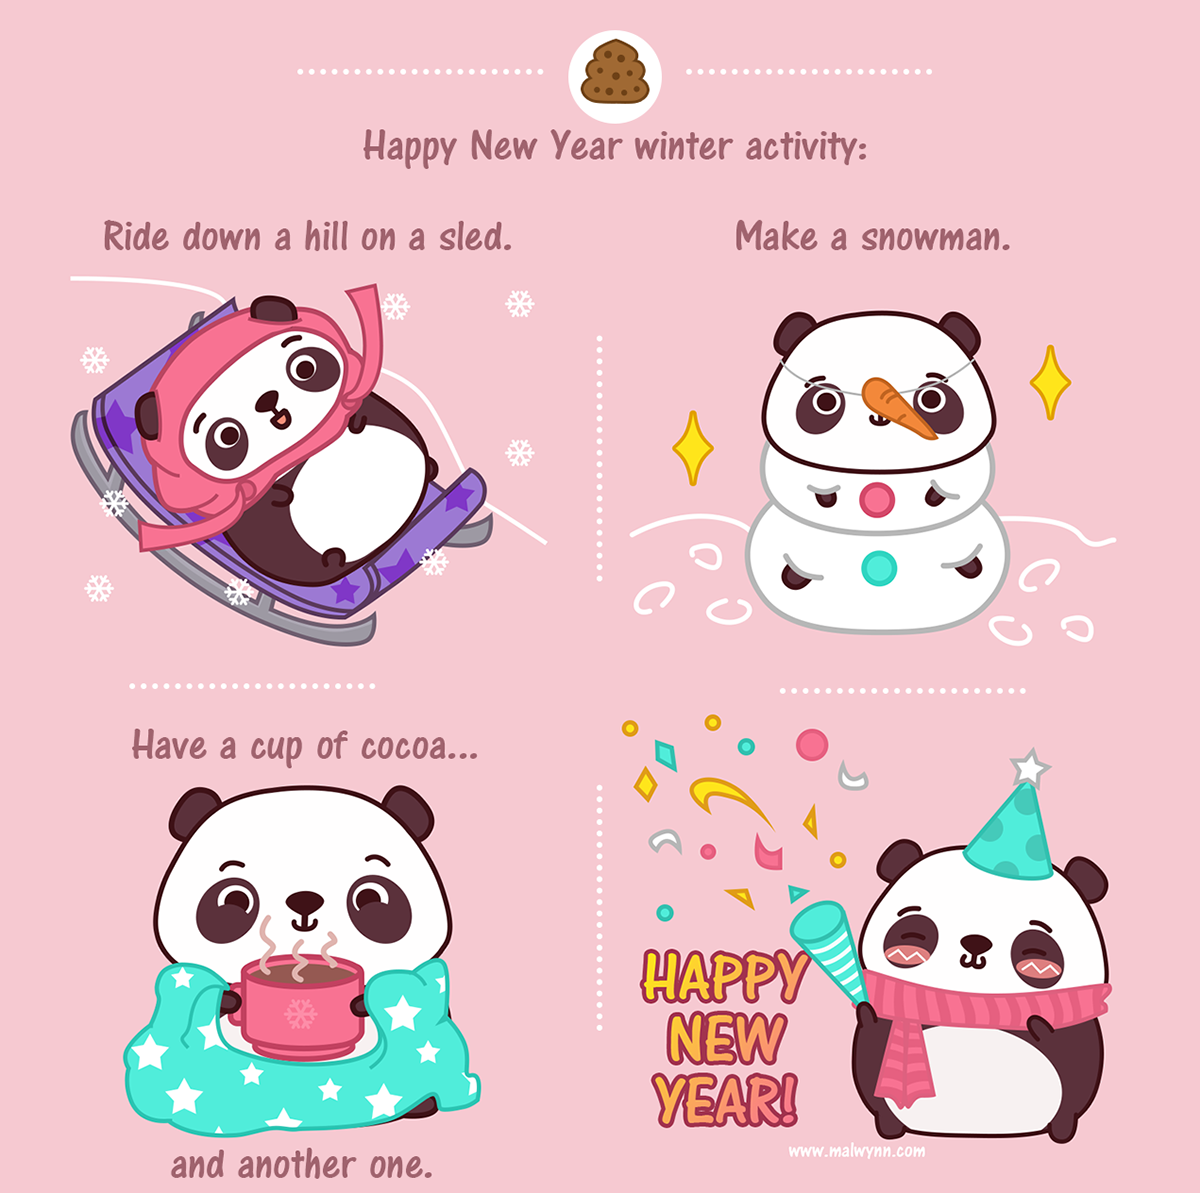 Panda  Malwynn stickers web-comic pusheen t-shirts logo Fun cute line